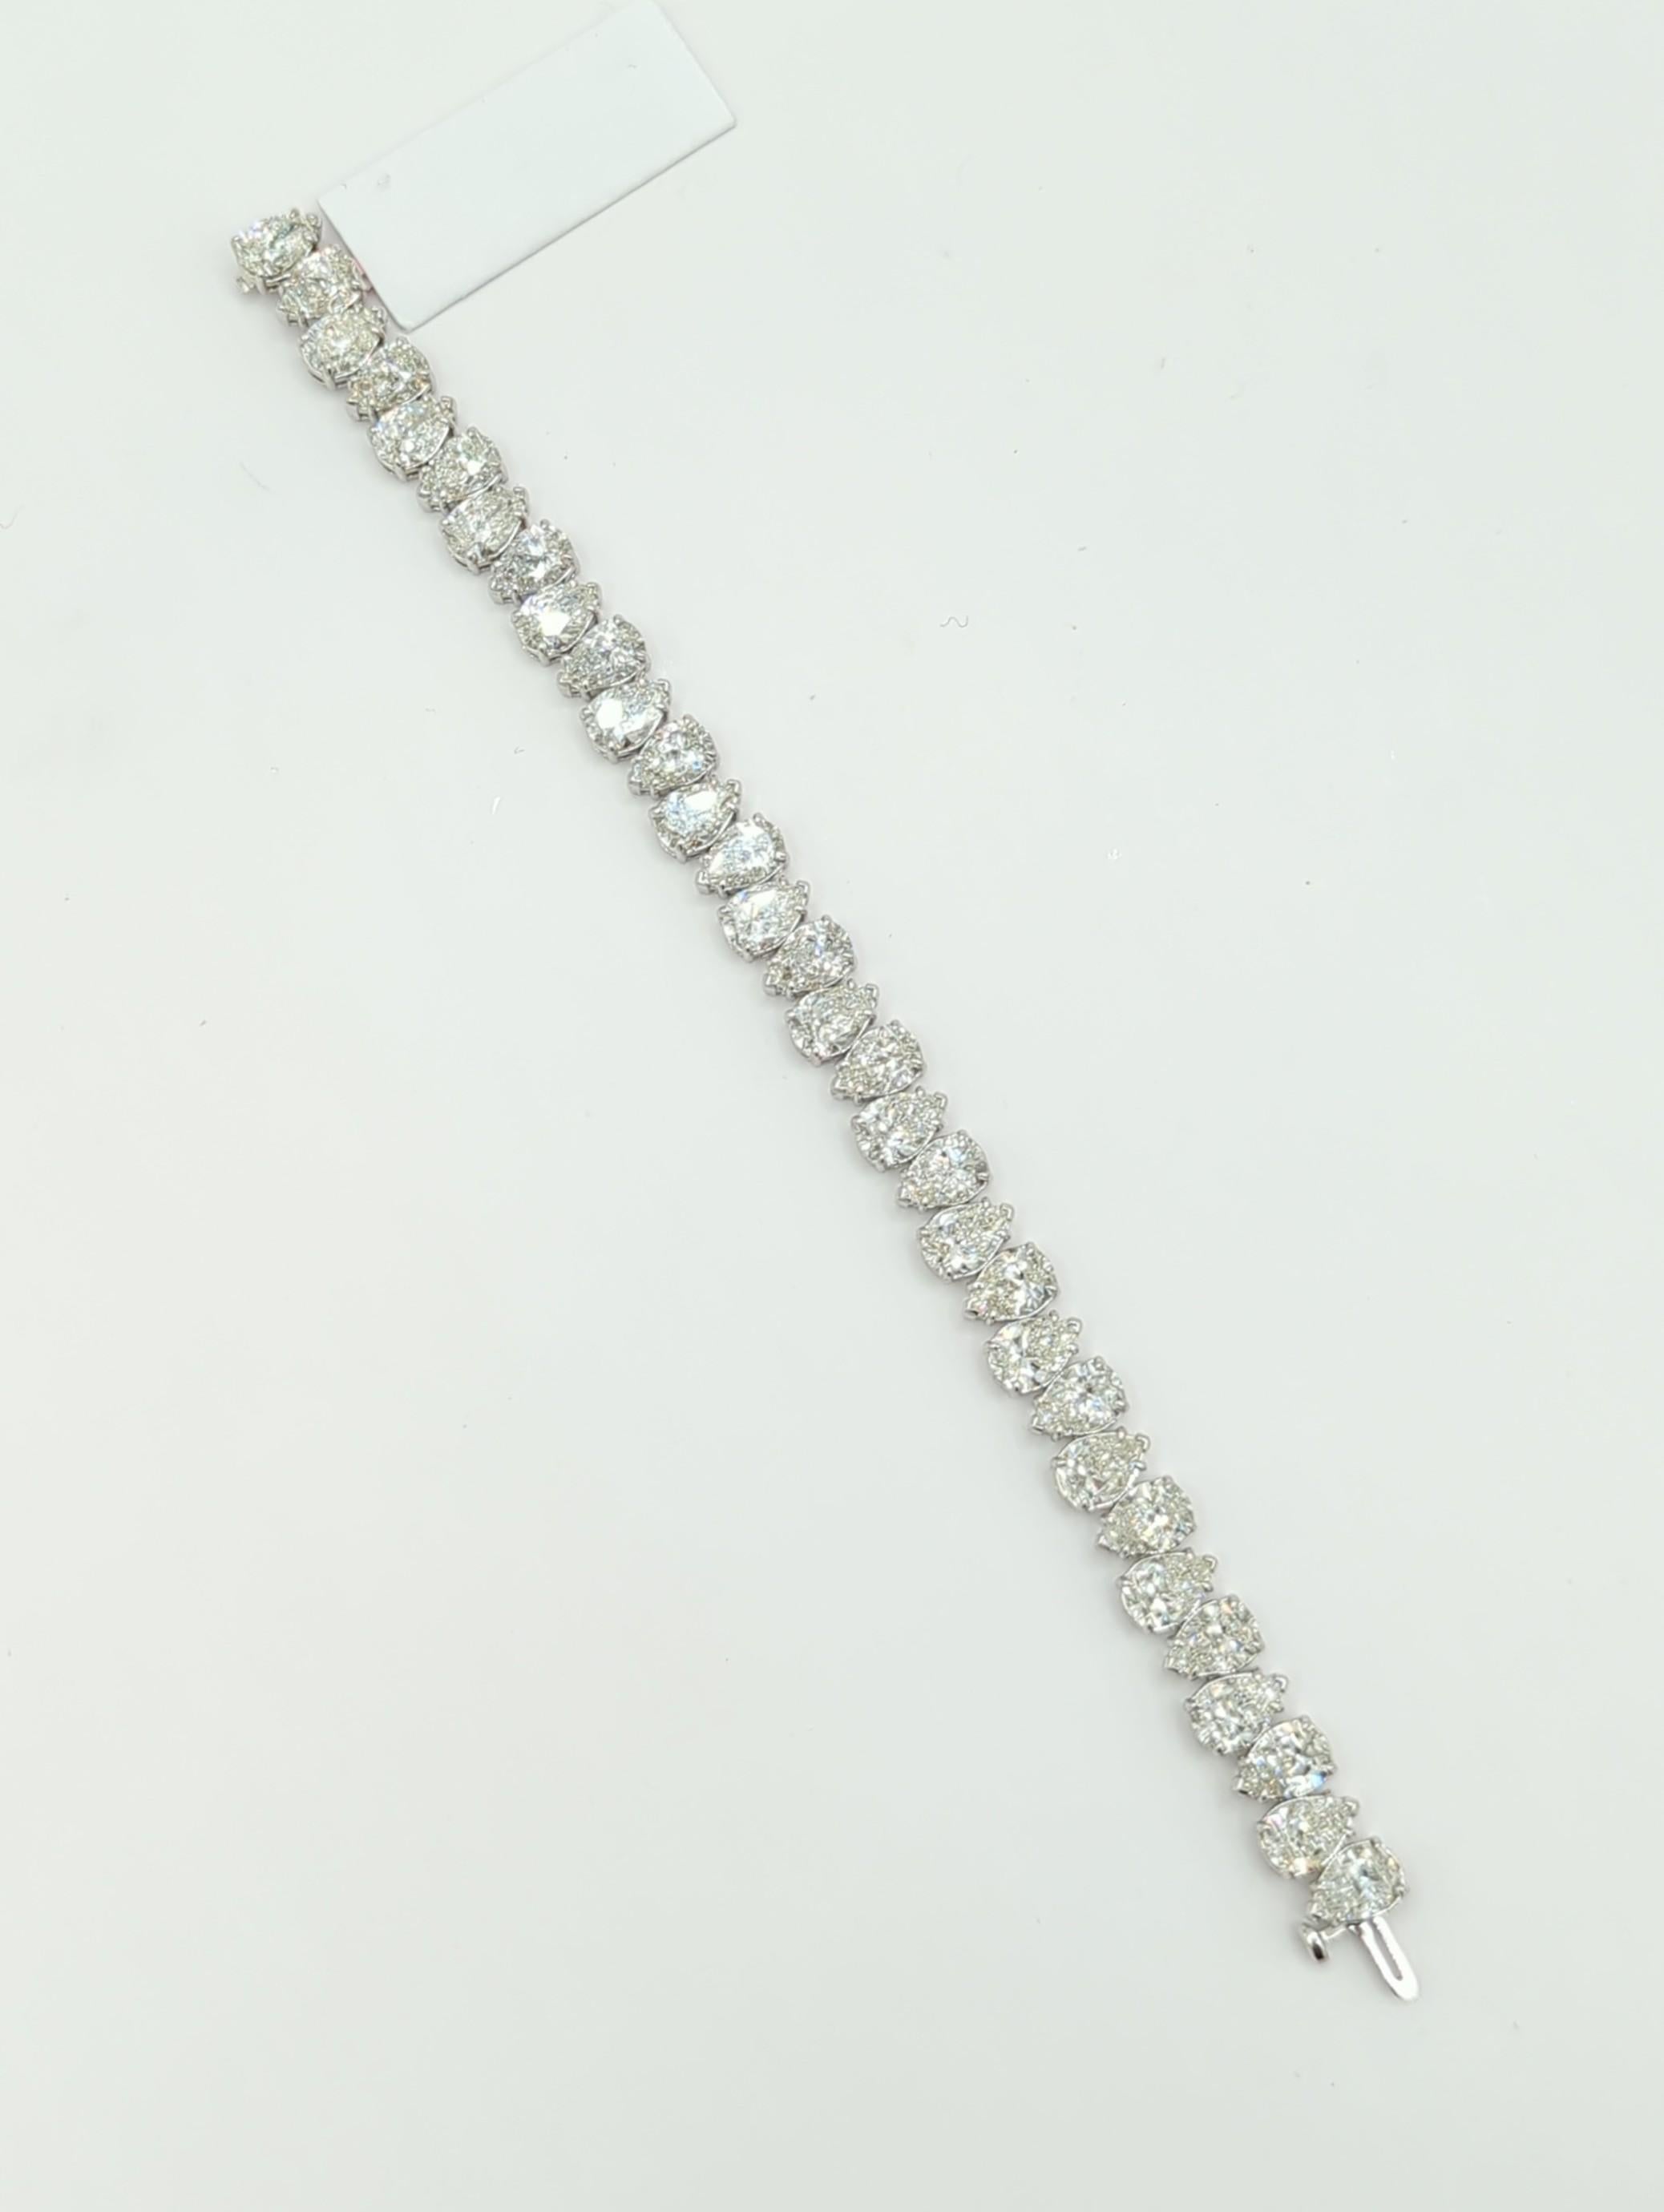 GIA 1 Carat Each White Diamond Pear Shape Tennis Bracelet in 18K White Gold For Sale 5